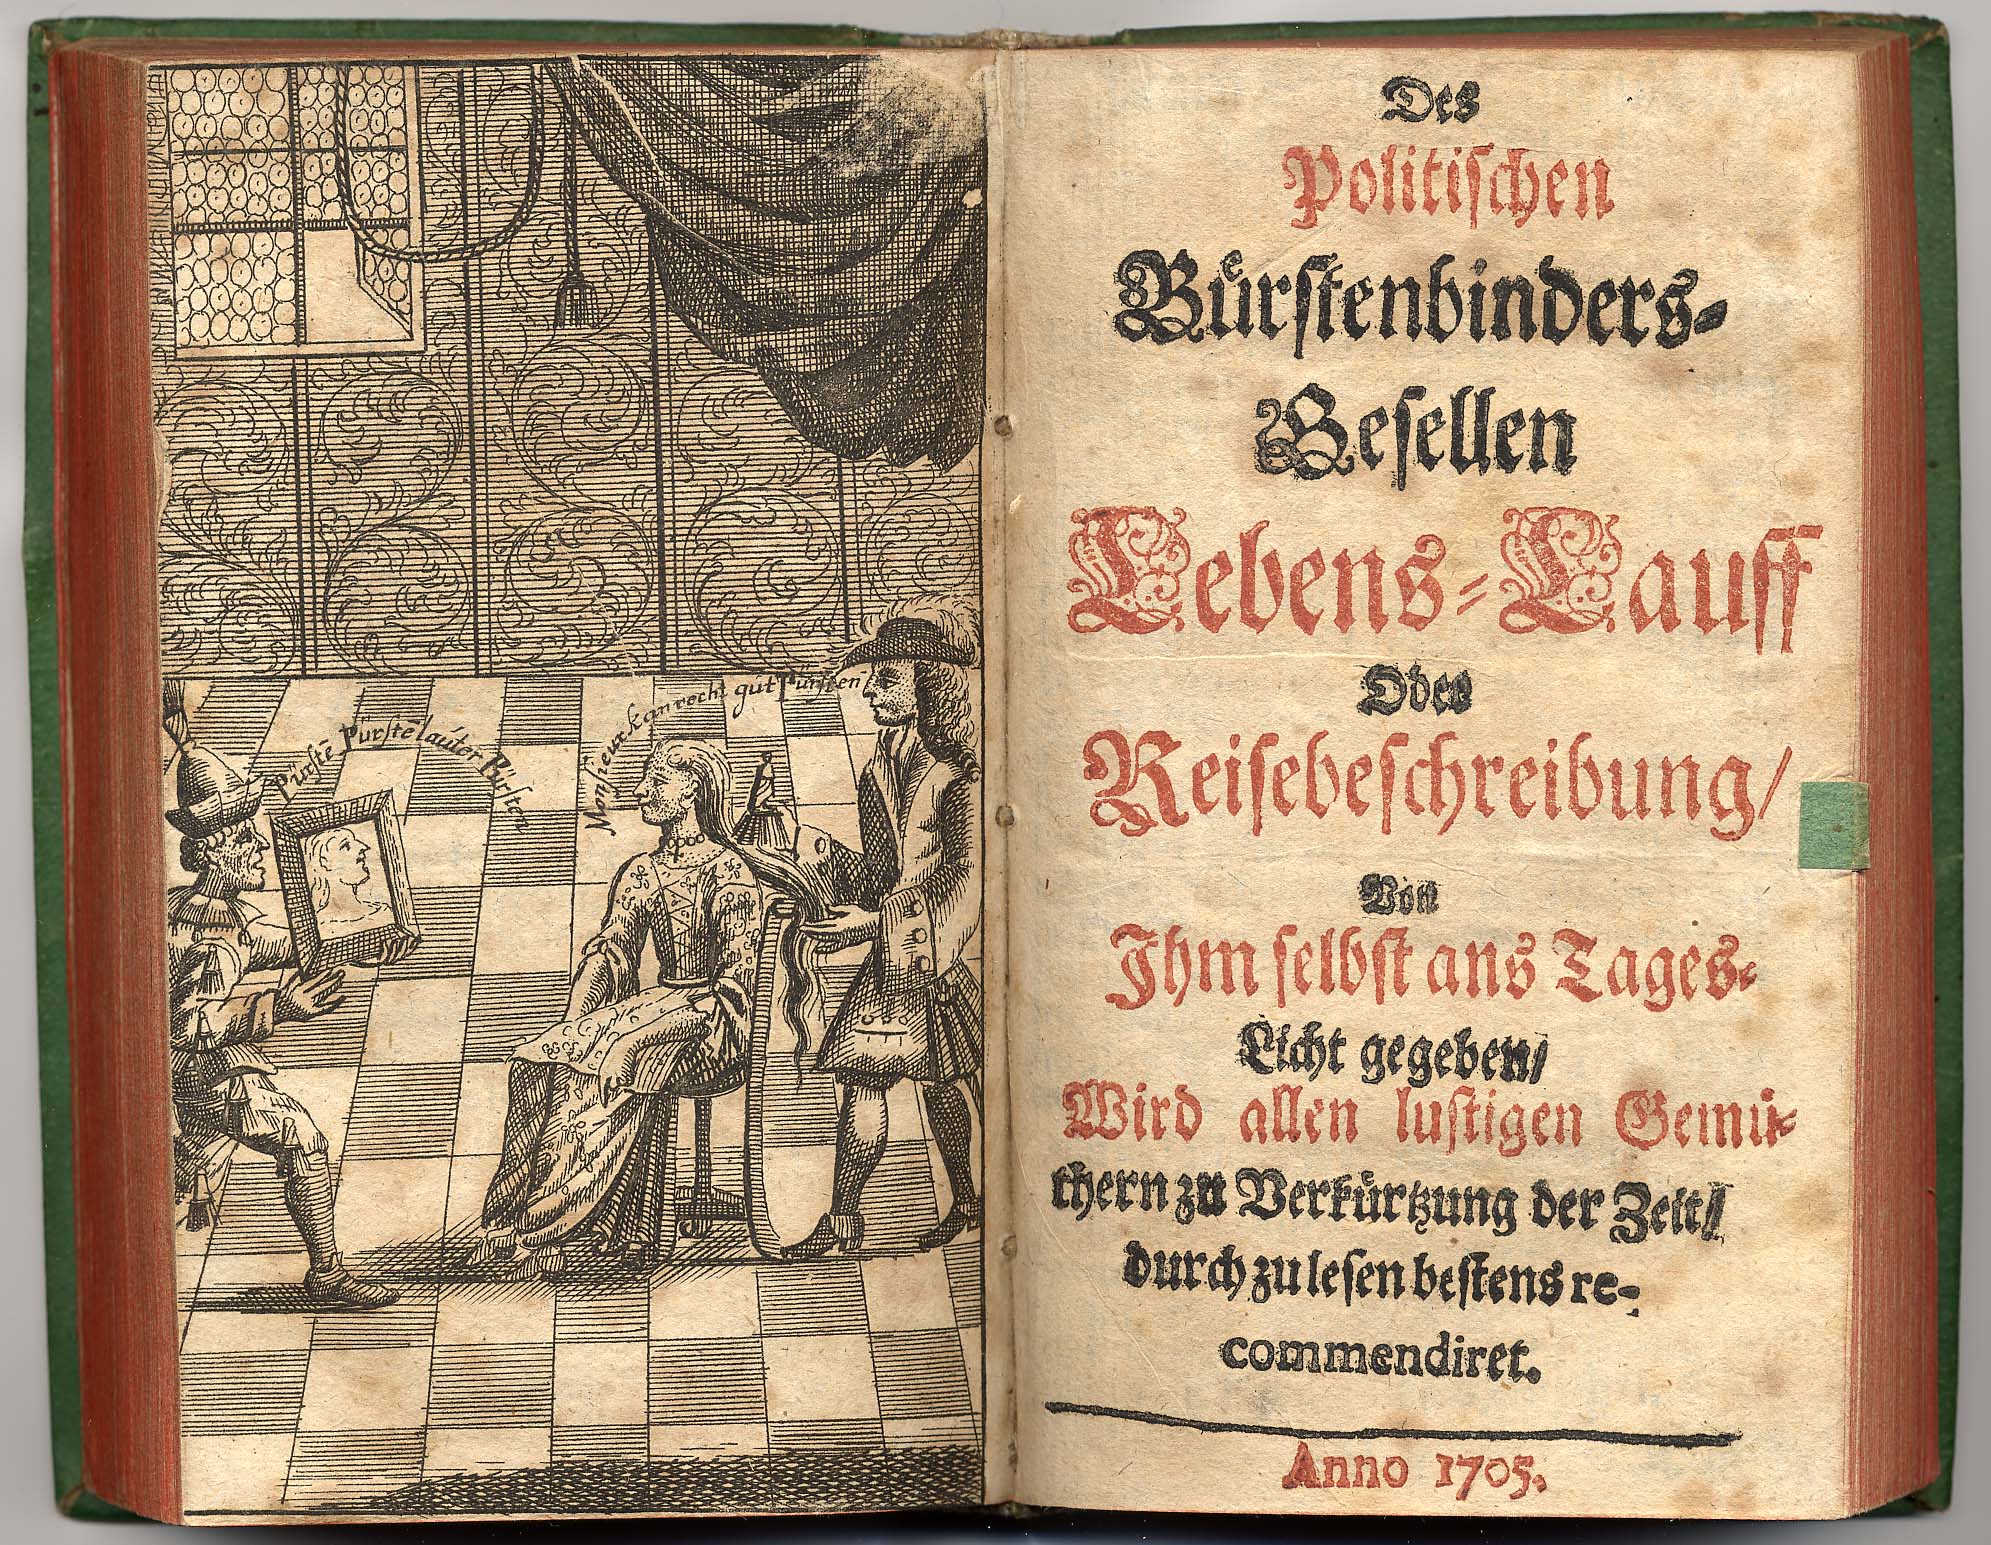 Stephen Andräs ohne Zu-Nahmen [pseud.], Des politischen Bürstenbinders-Gesellen Lebens-Lauff [...] von ihm selbst ans Tages-Licht gegeben (1705).